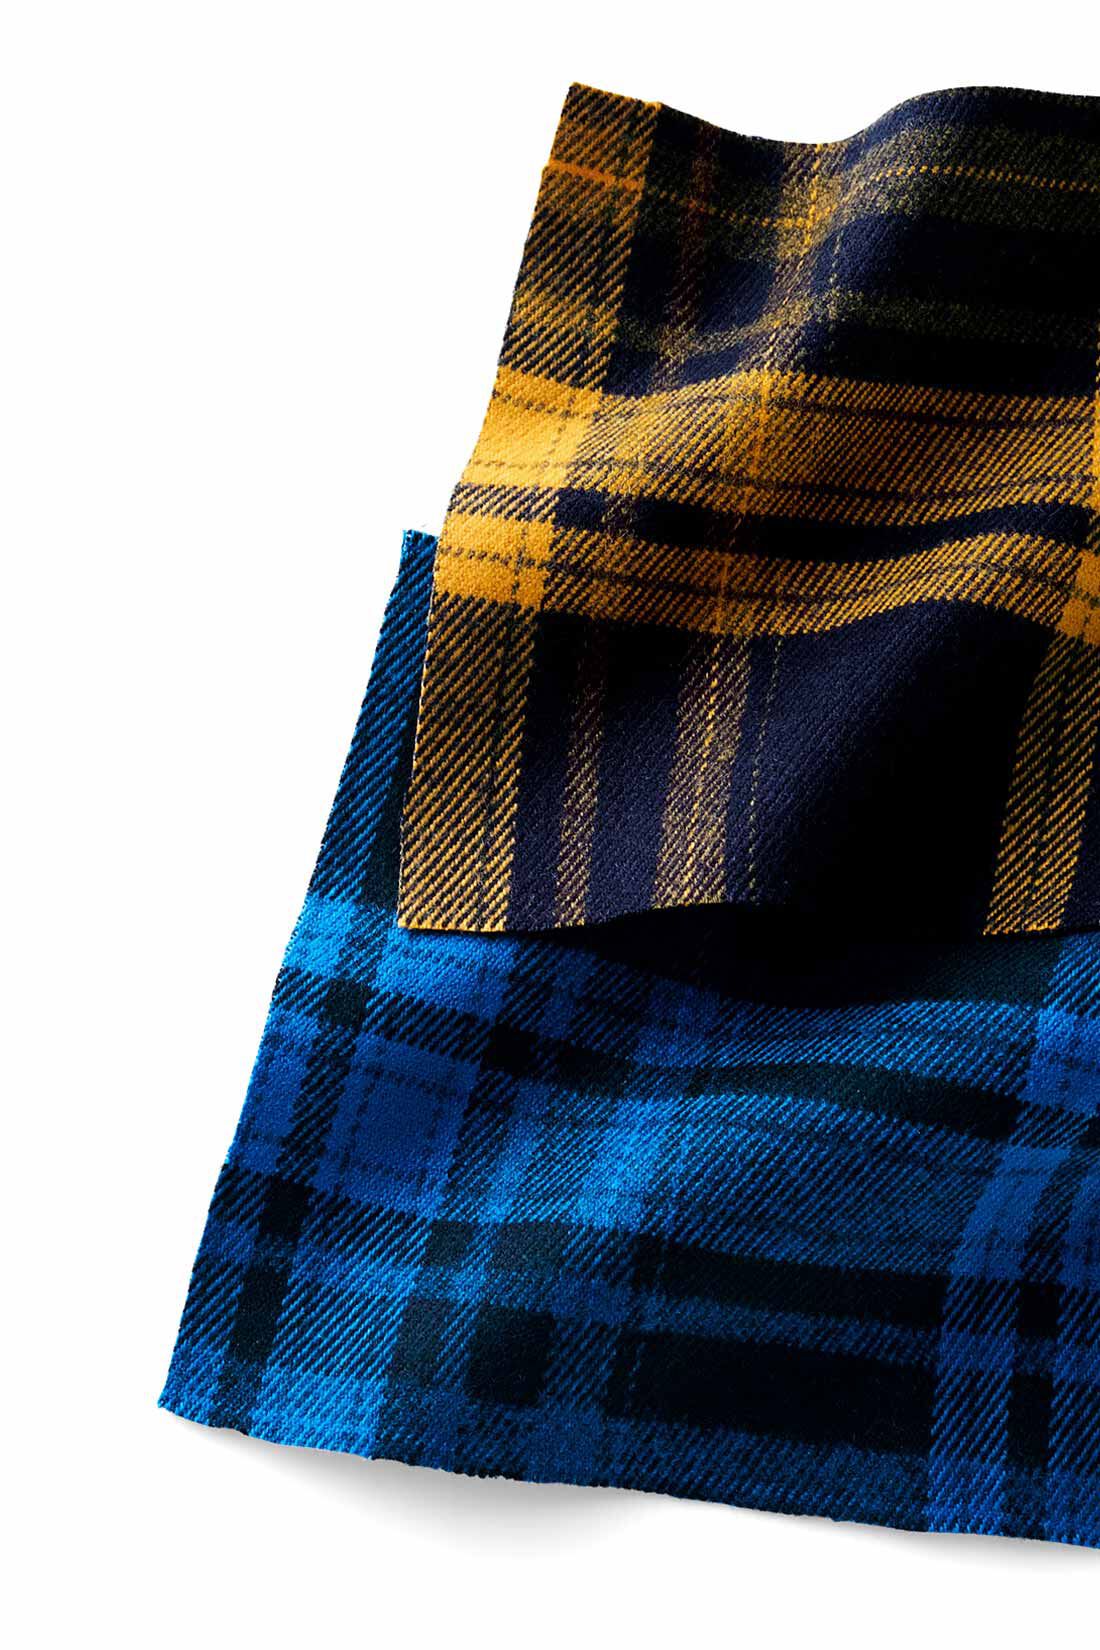 MEDE19F|MEDE19F　バイカラーチェックスカート〈ブルー〉|先染めチェックの布はく生地。適度な厚みとあたたかな風合いで秋冬らしく。